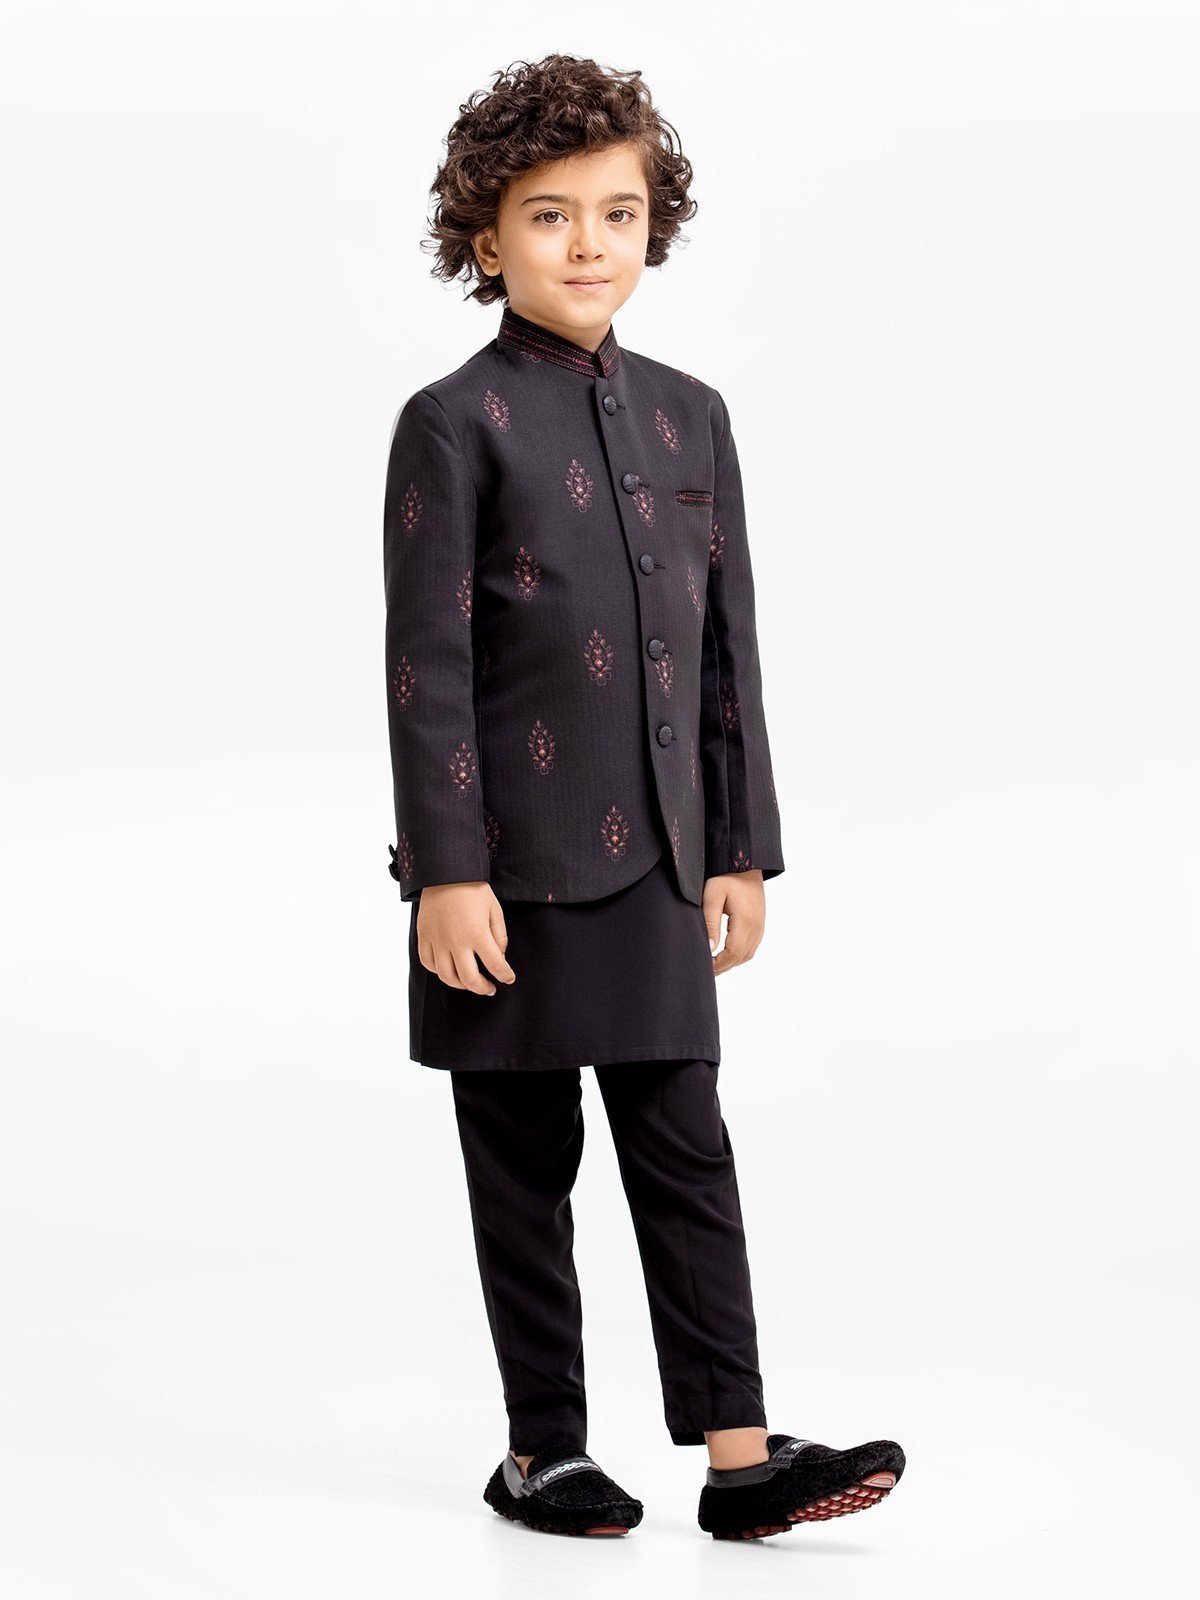 Boy's Black Prince Suit - EBTPCS22-005